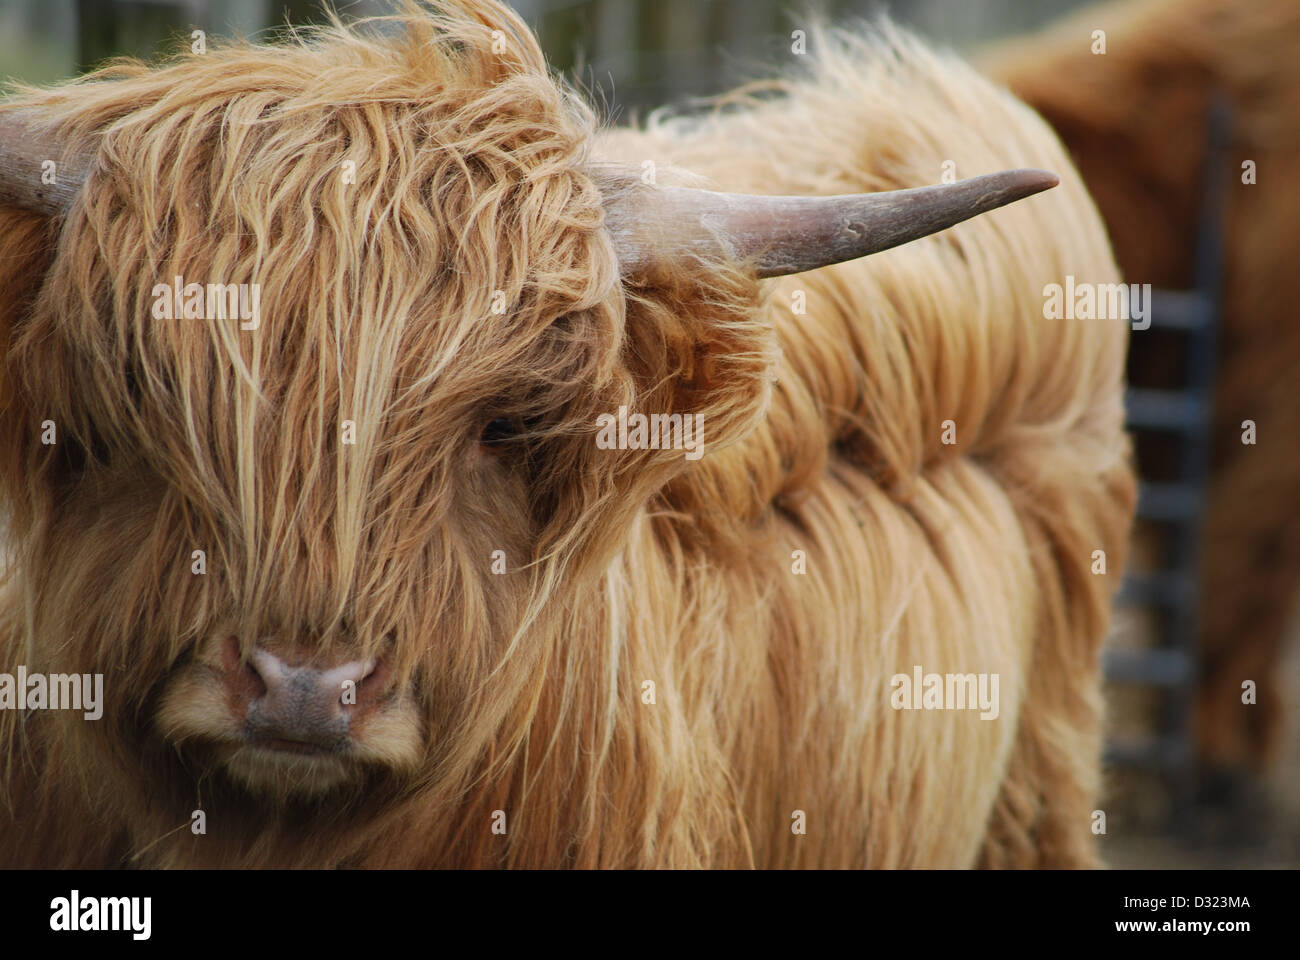 Un altiplano vaca con naranja o jengibre pelo largo pelaje en un pequeño zoológico de animales de granja o con los cuernos de cerca y bokeh de fondo borroso Foto de stock